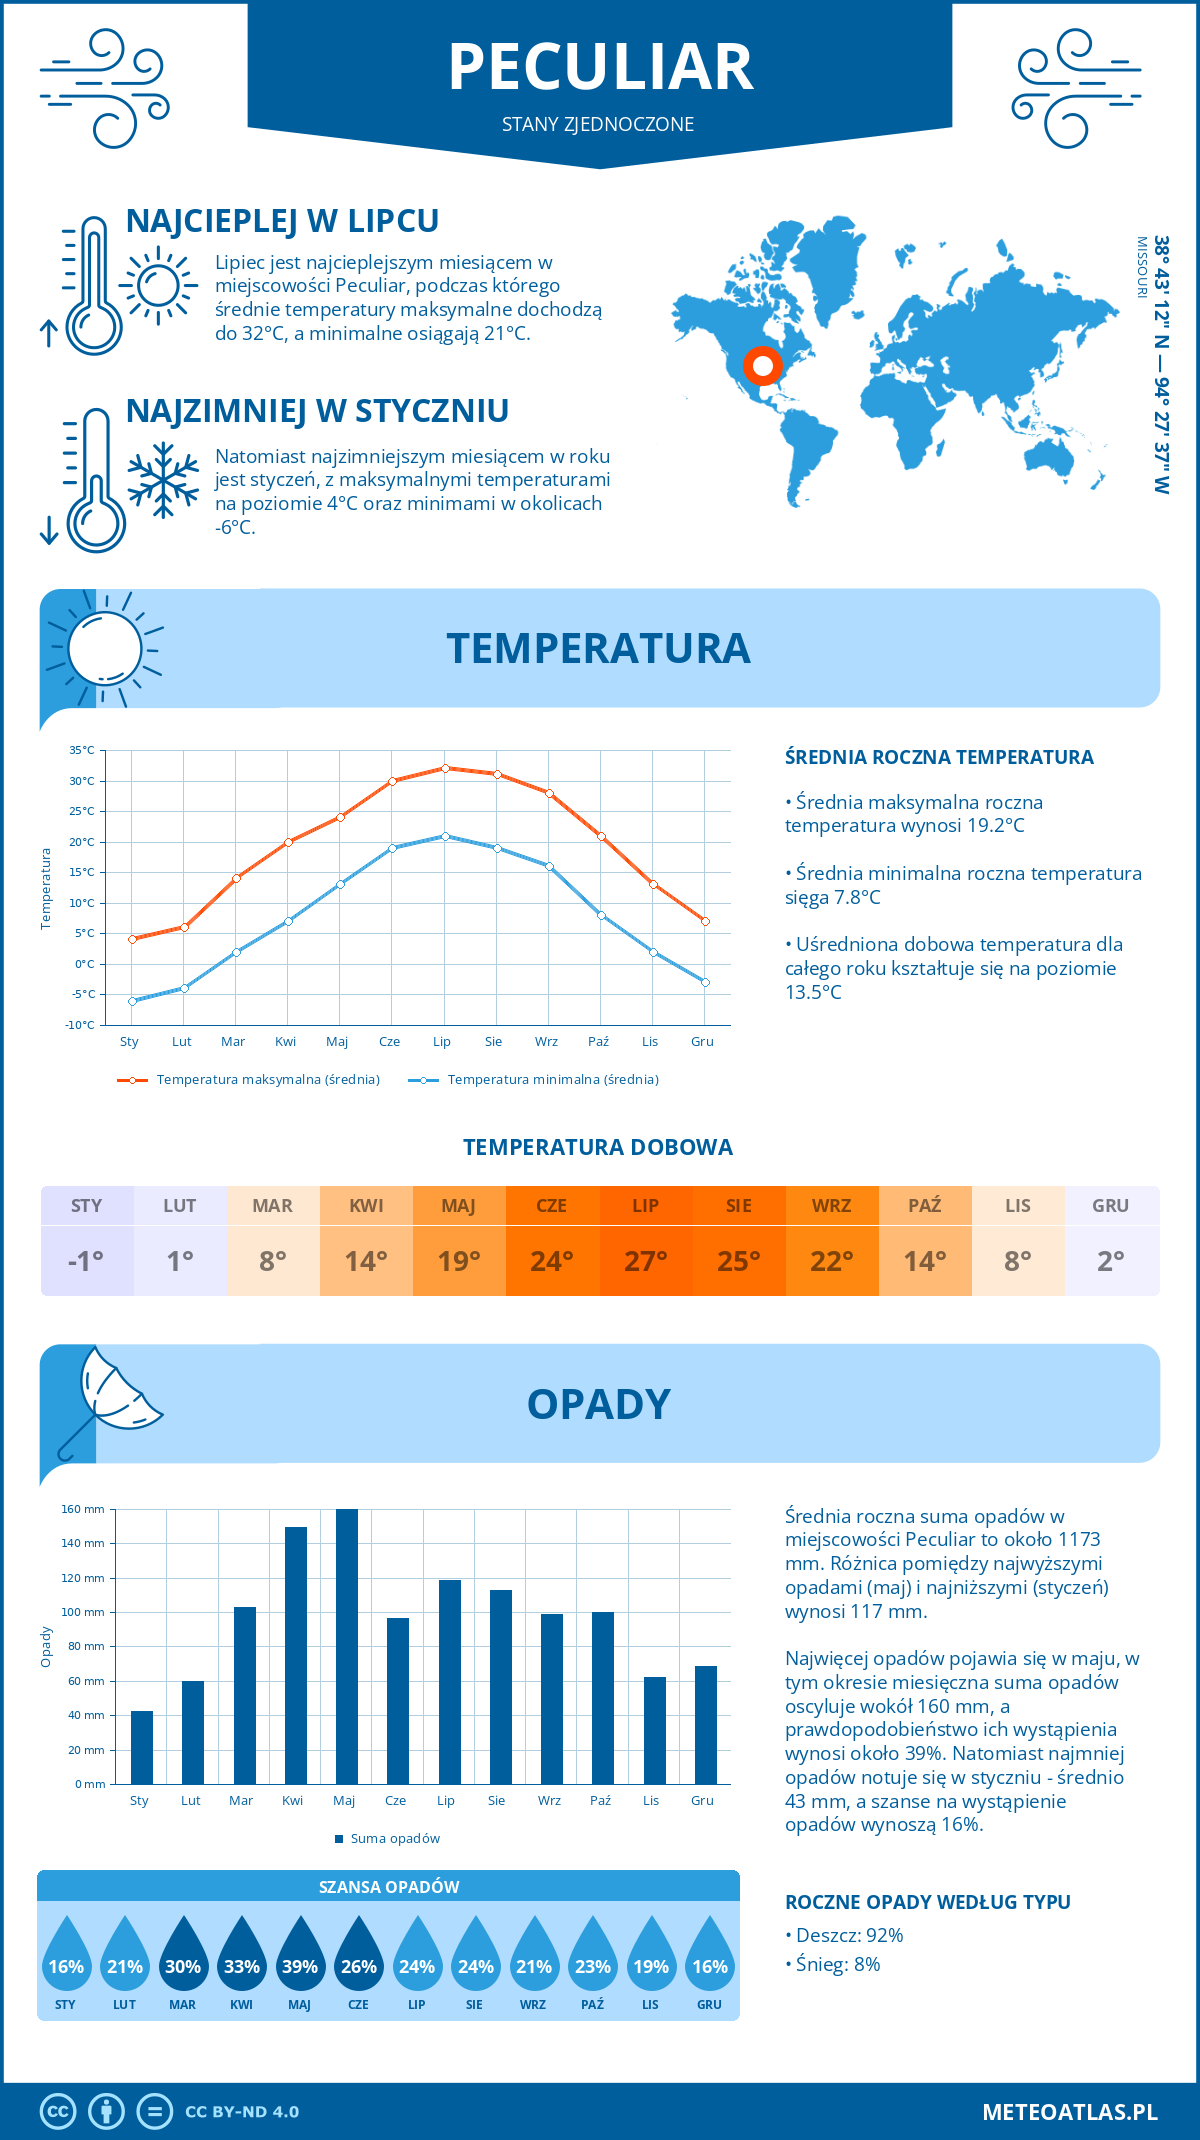 Pogoda Peculiar (Stany Zjednoczone). Temperatura oraz opady.